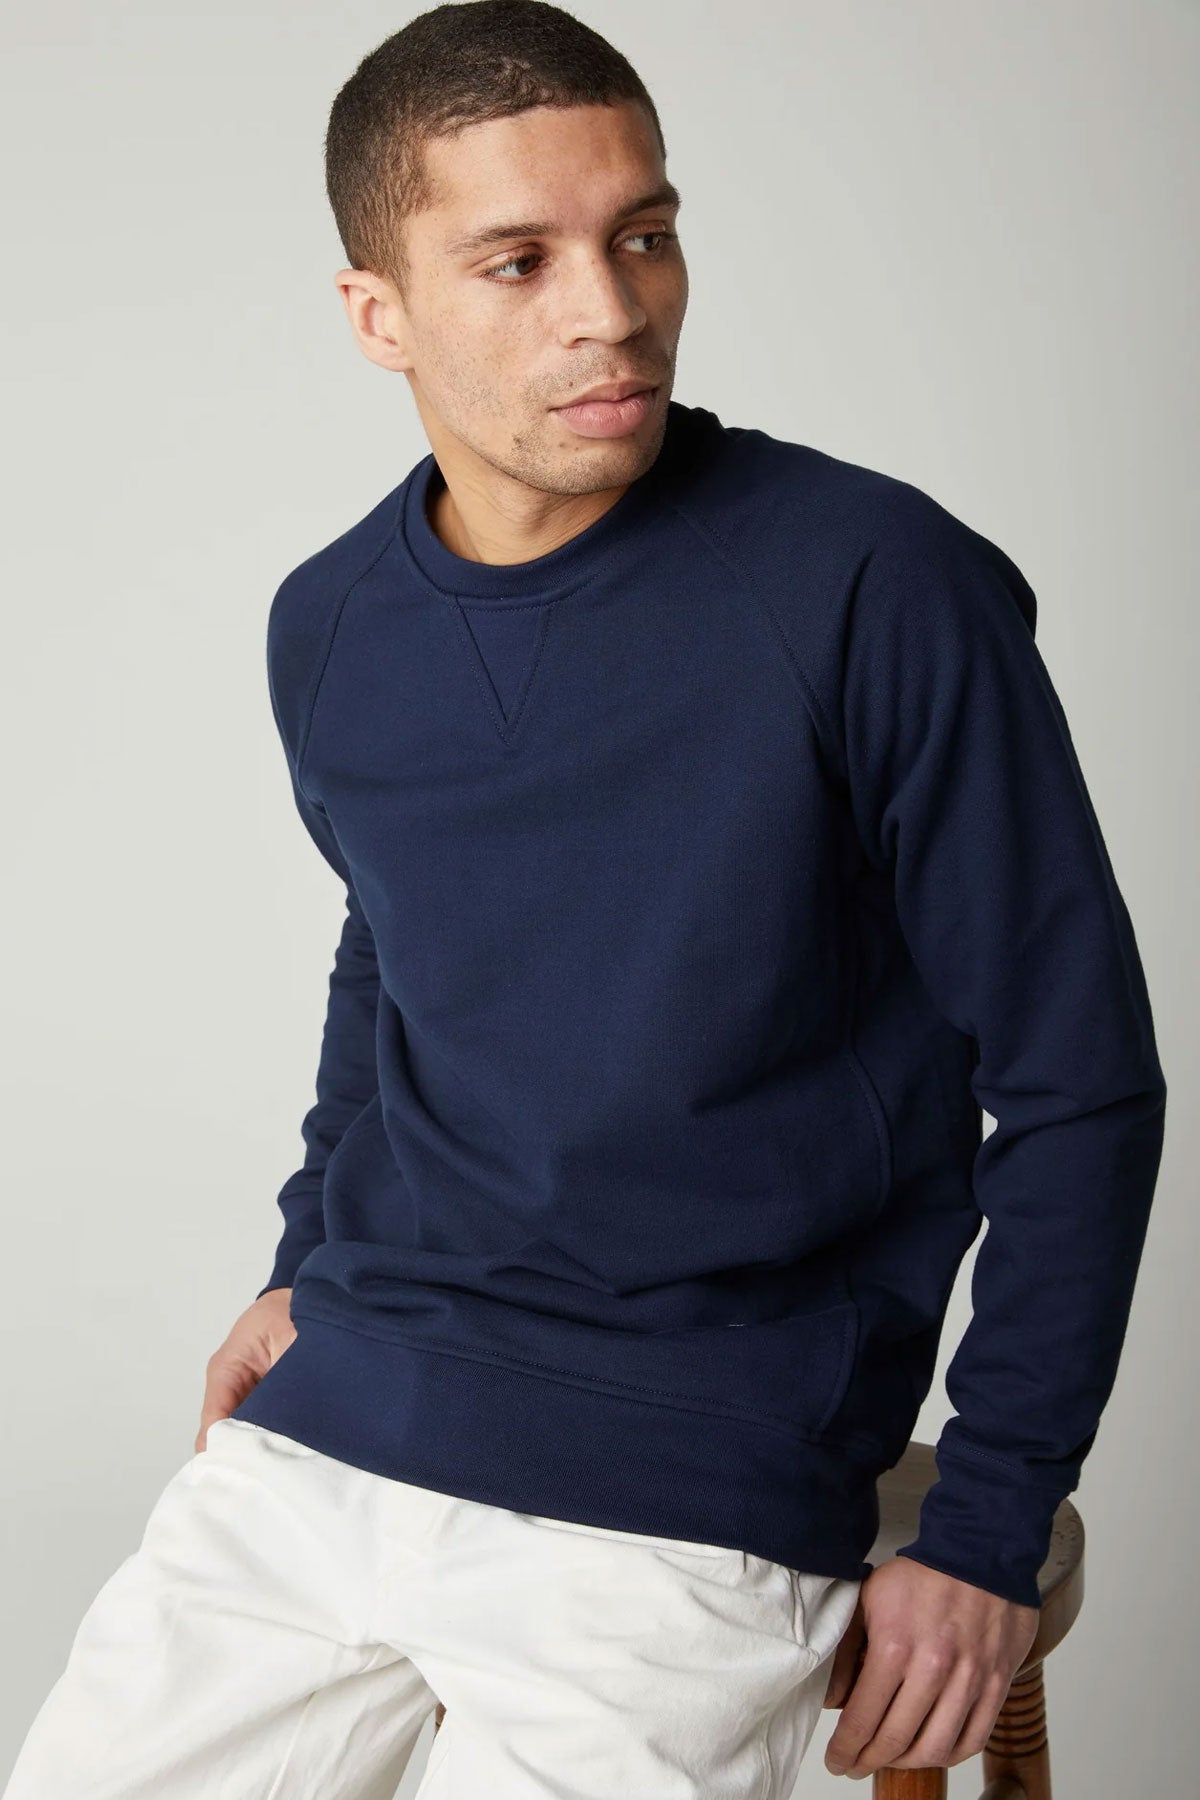 Peregrine - Classic Sweatshirt in Navy